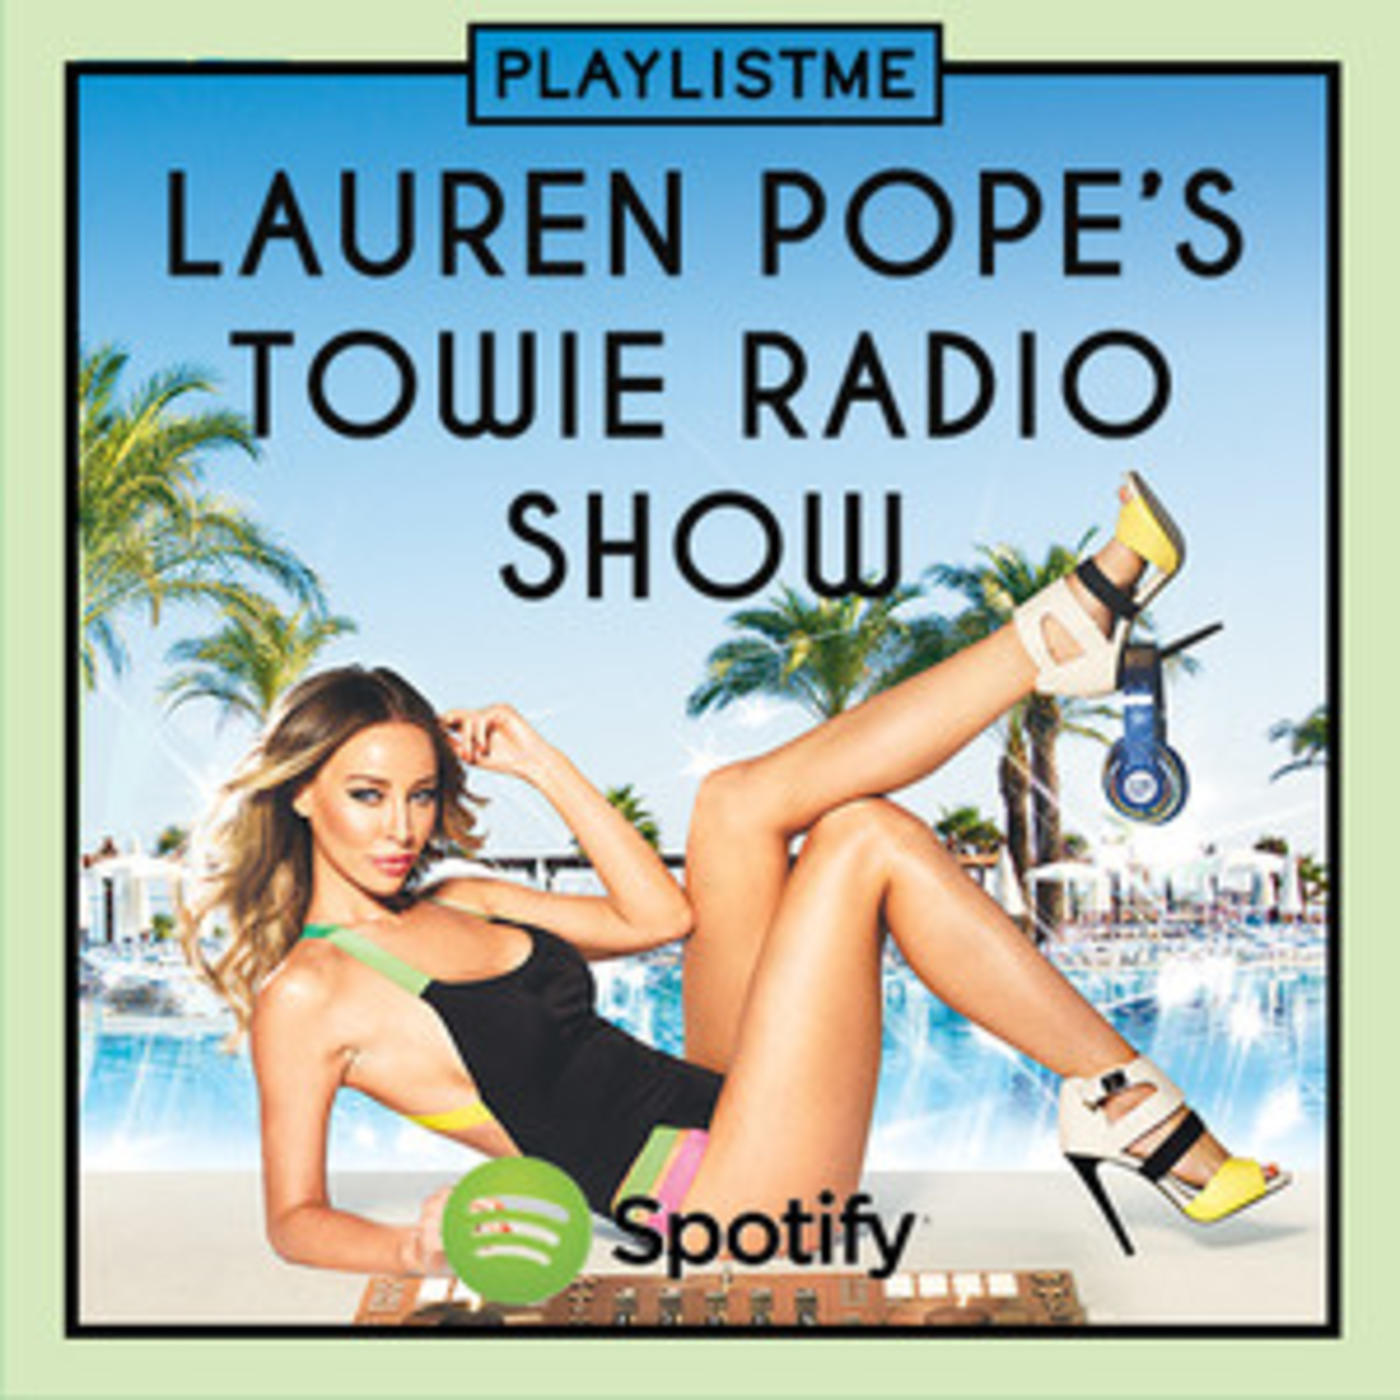 Lauren Pope's Towie Radio Show